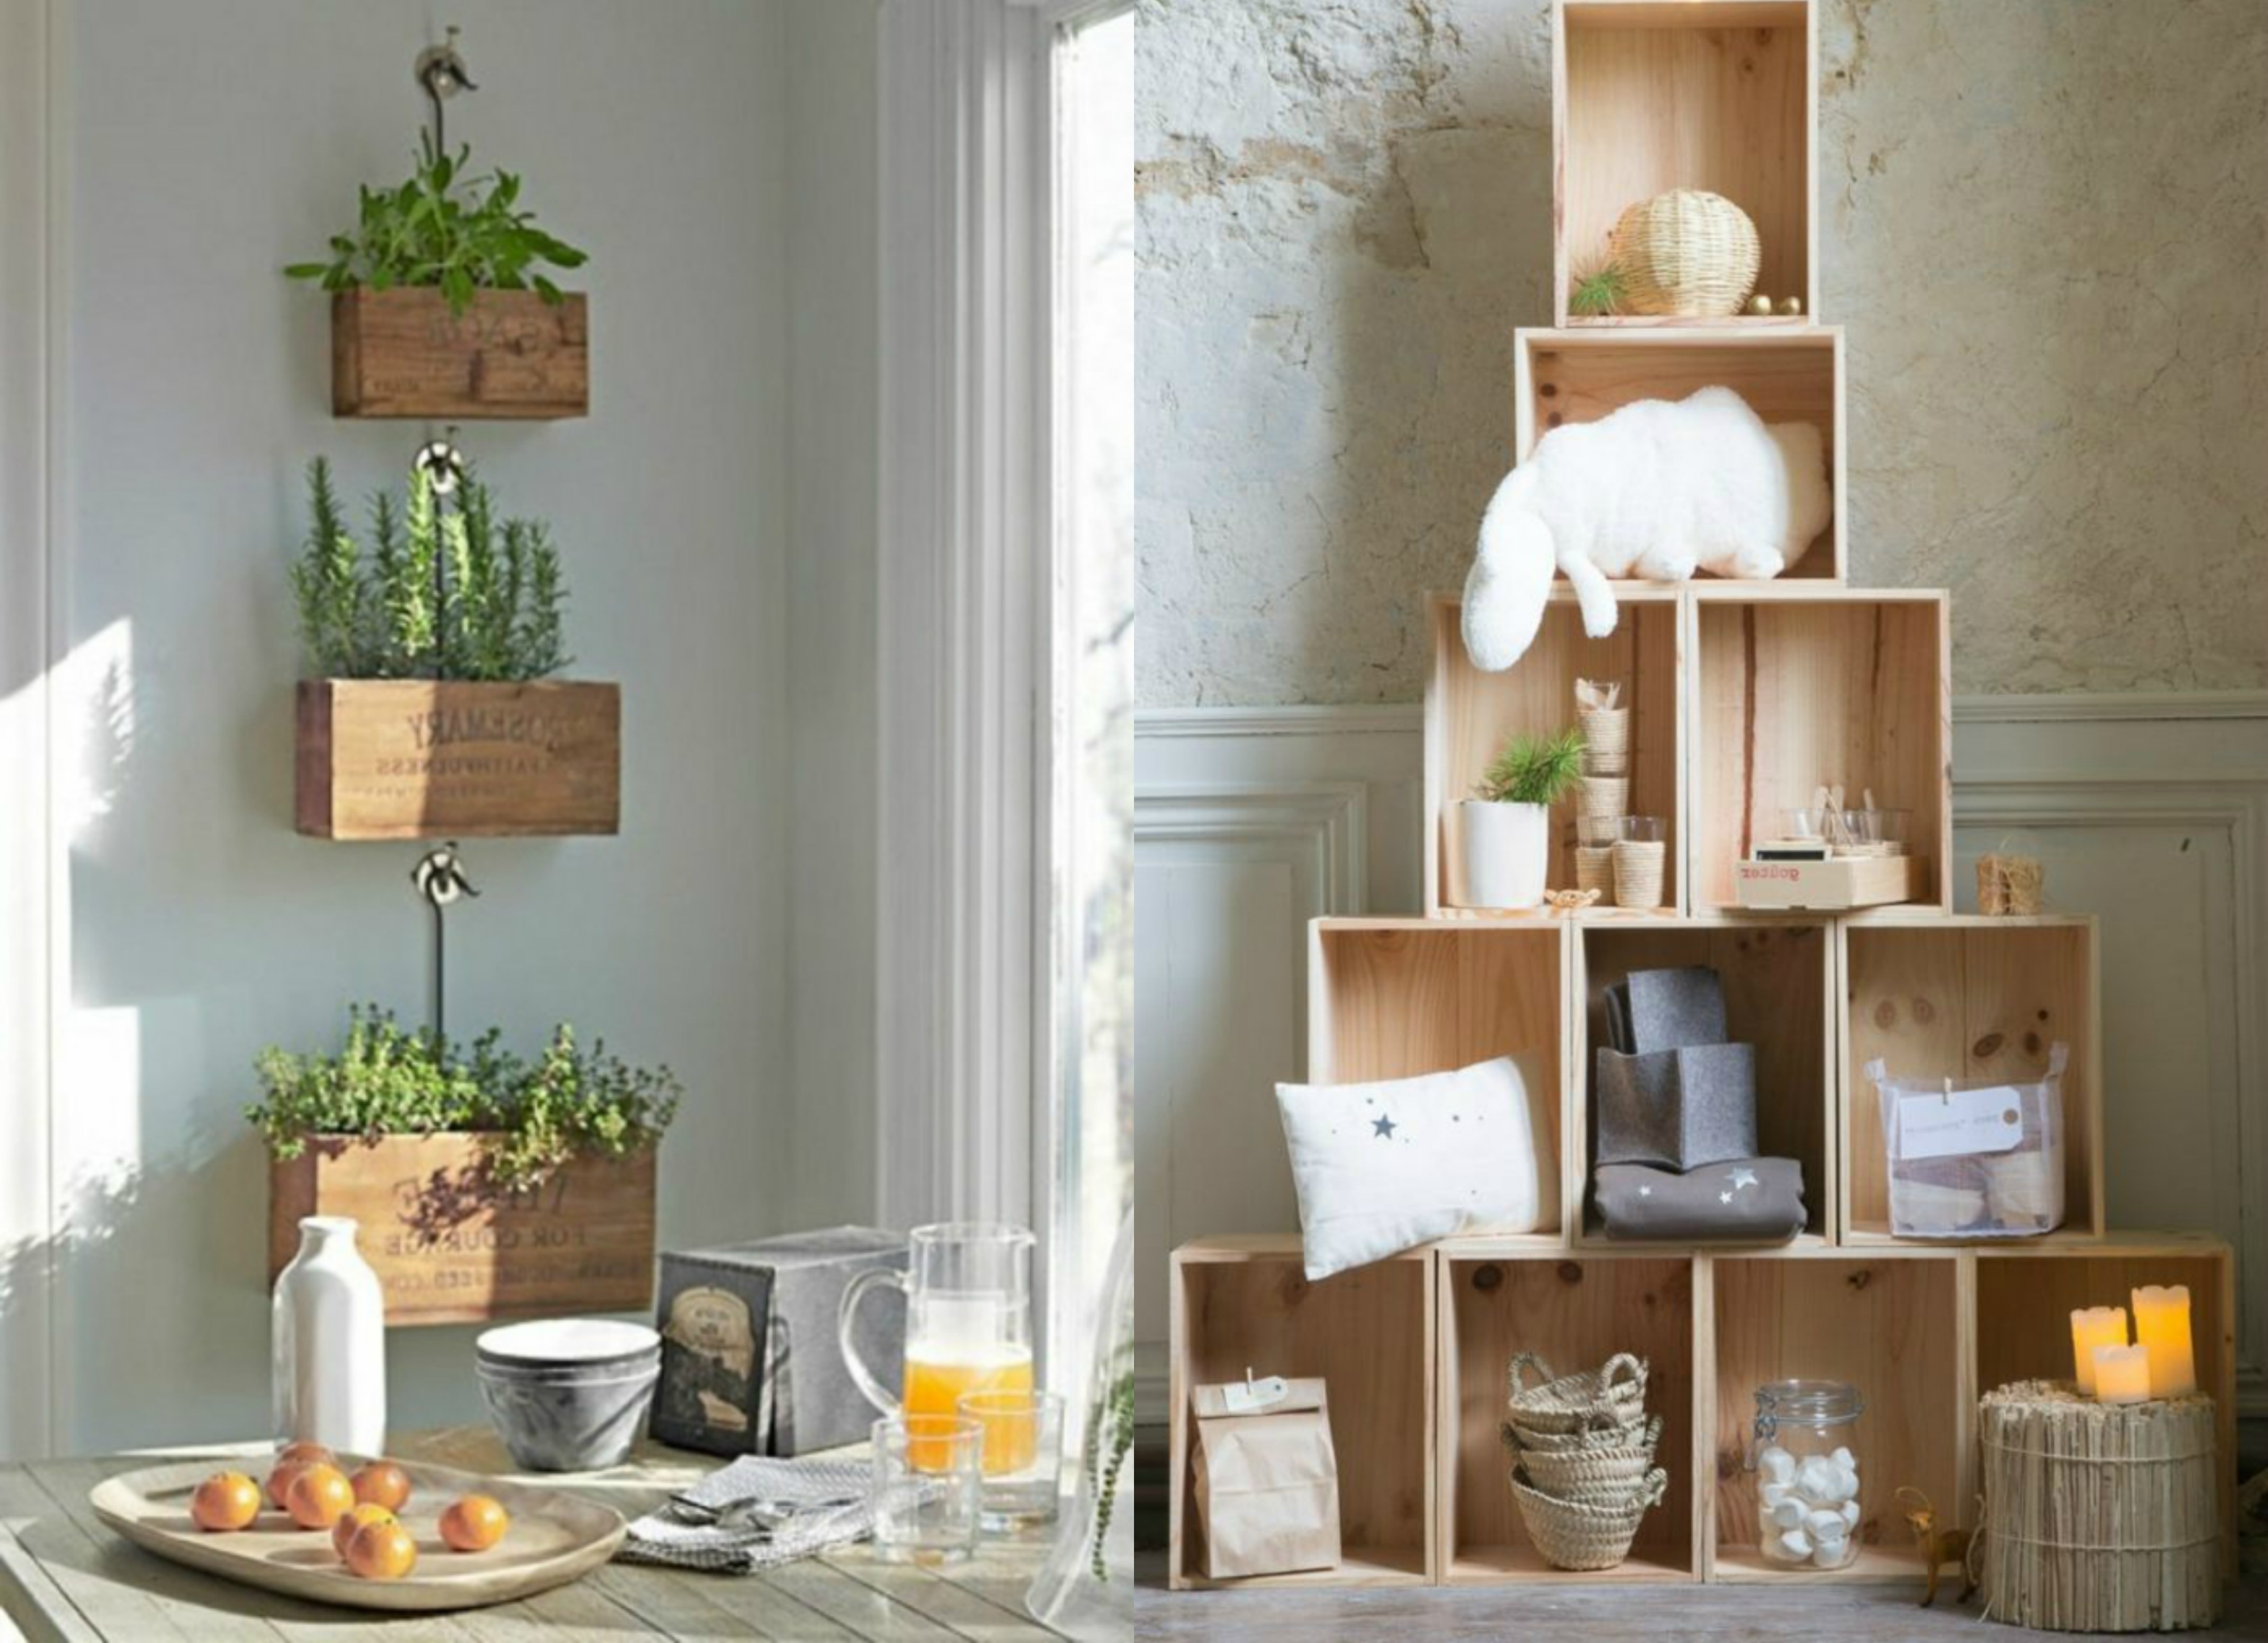 dos propuestas encantadoras de muebles hechos de cajas de frutas, decorar cajas de madera ideas inspiradoras